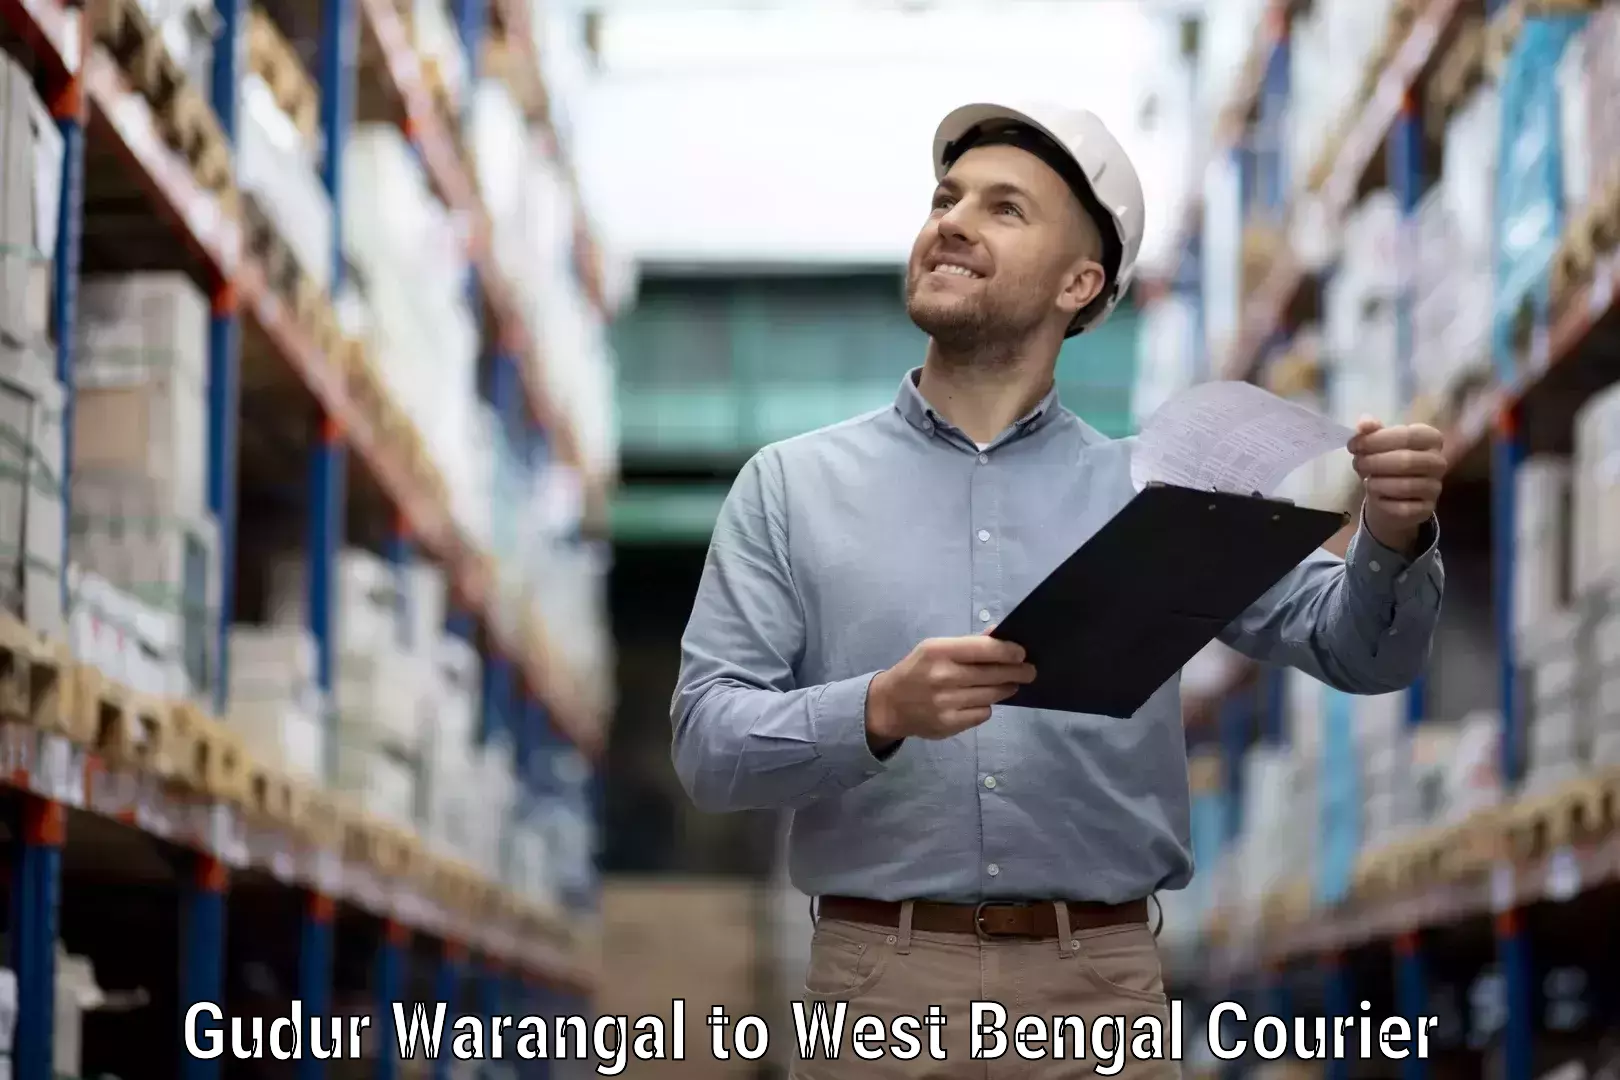 Global shipping networks Gudur Warangal to Kusumgram